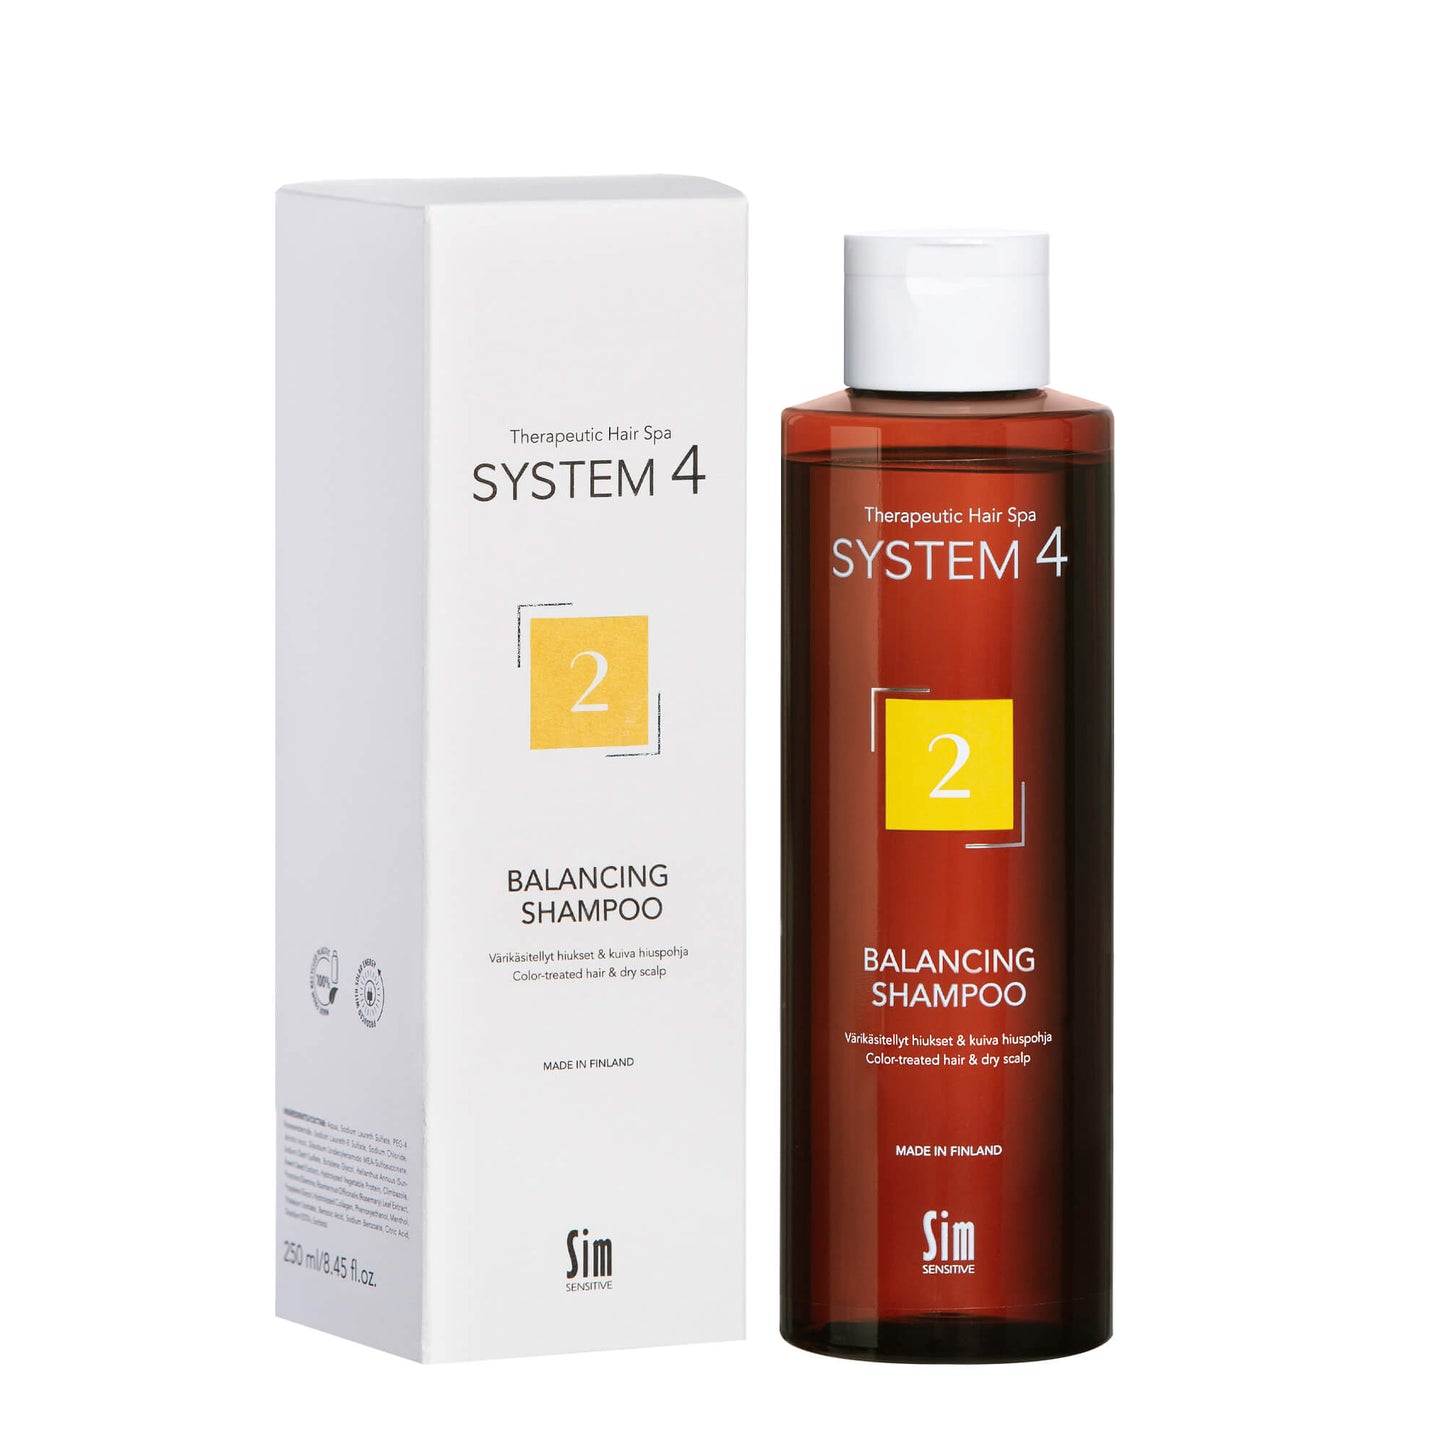 SYSTEM 4 Balancing Shampoo 2 värikäsitellyille hiuksille ja kuivalle hiuspohjalle 250 ml